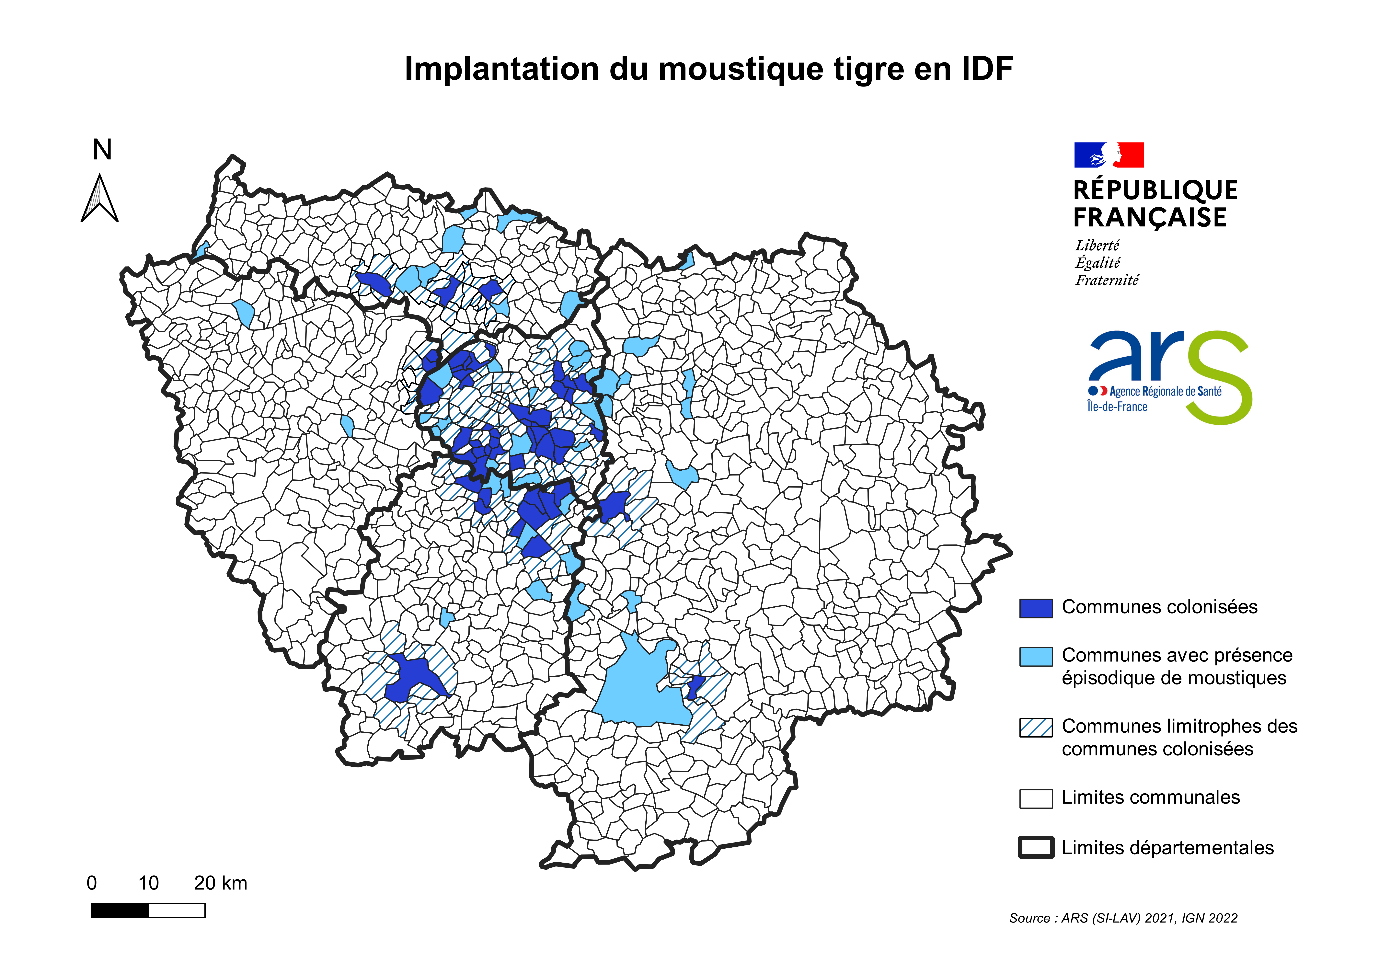 Moustique tigre en Île-de-France | Agence régionale de santé Ile-de-France